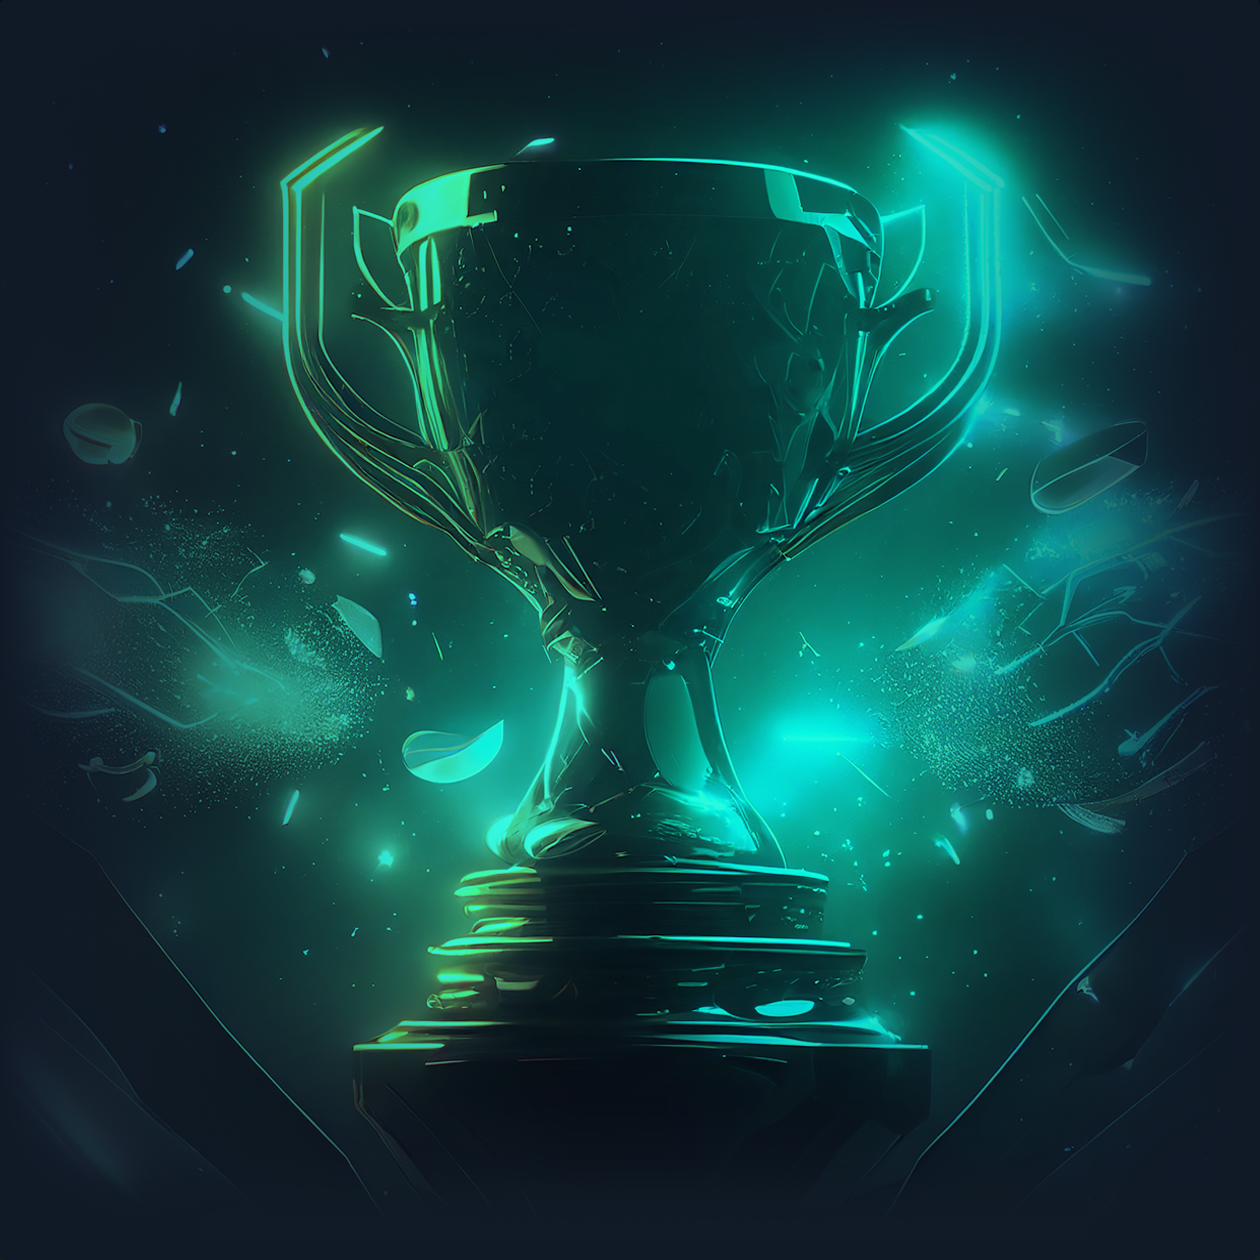 Cup_Rewards_Header